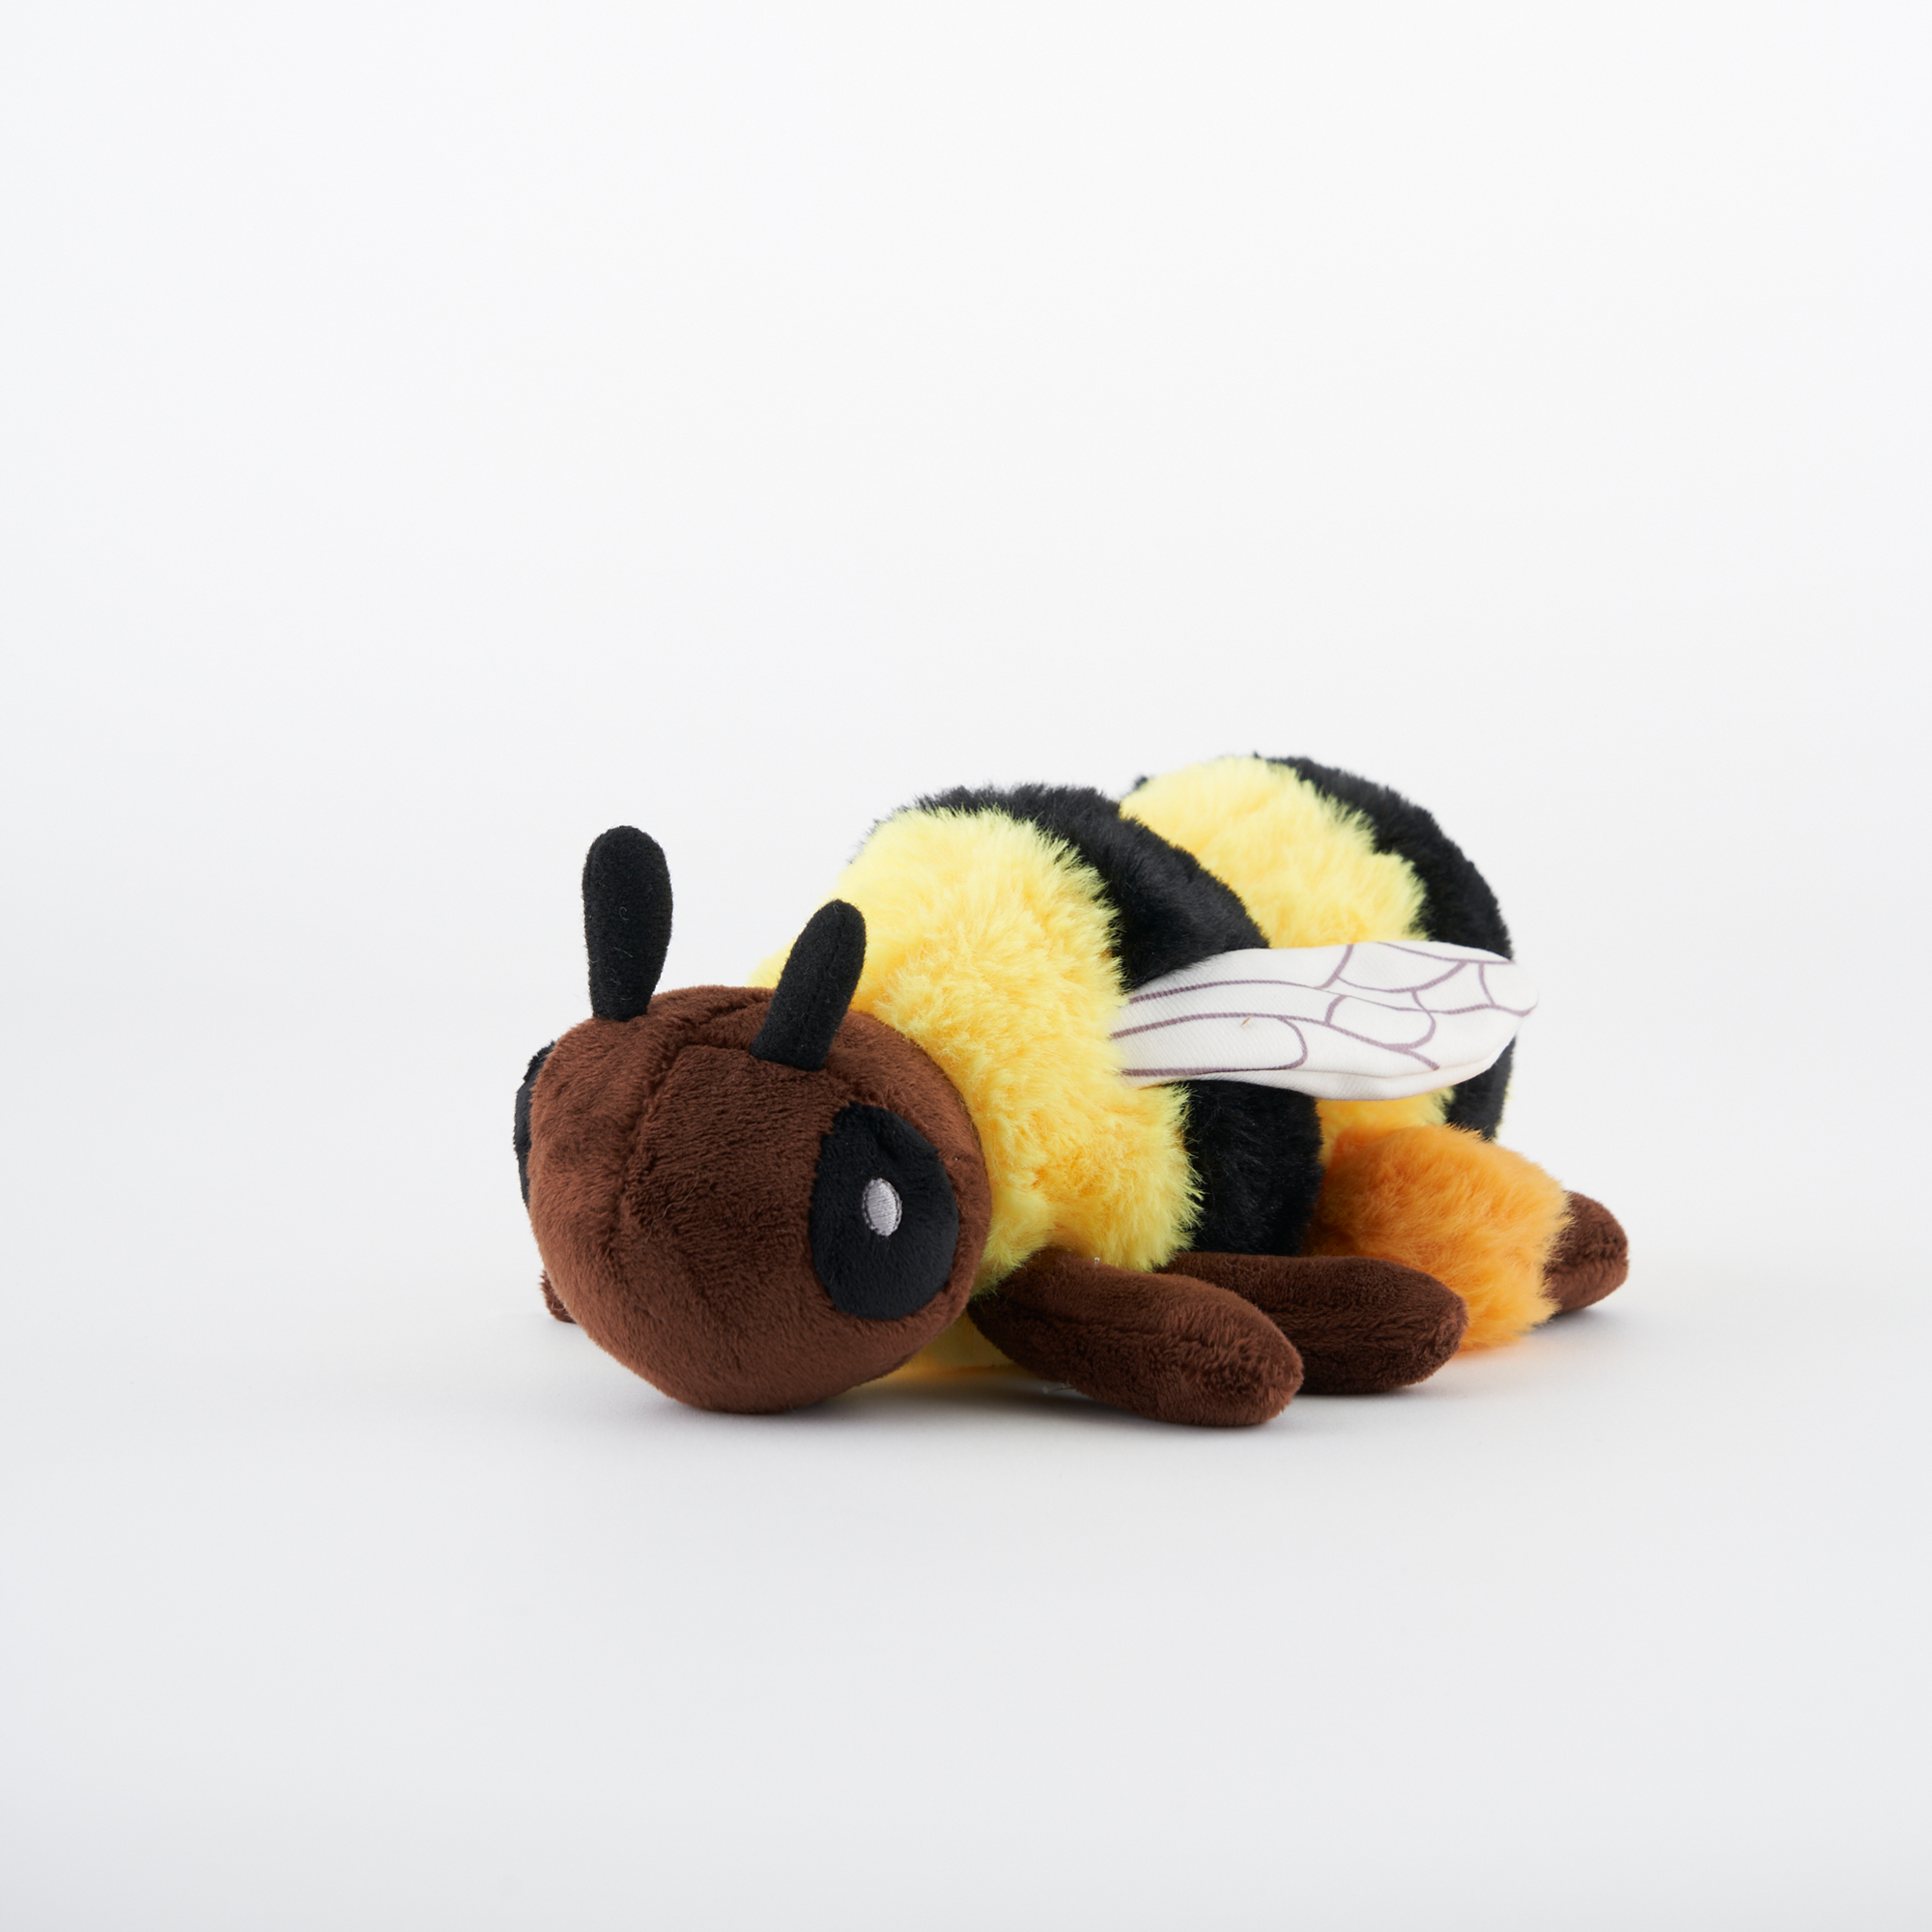 Western Bumblebee Adoption Kit